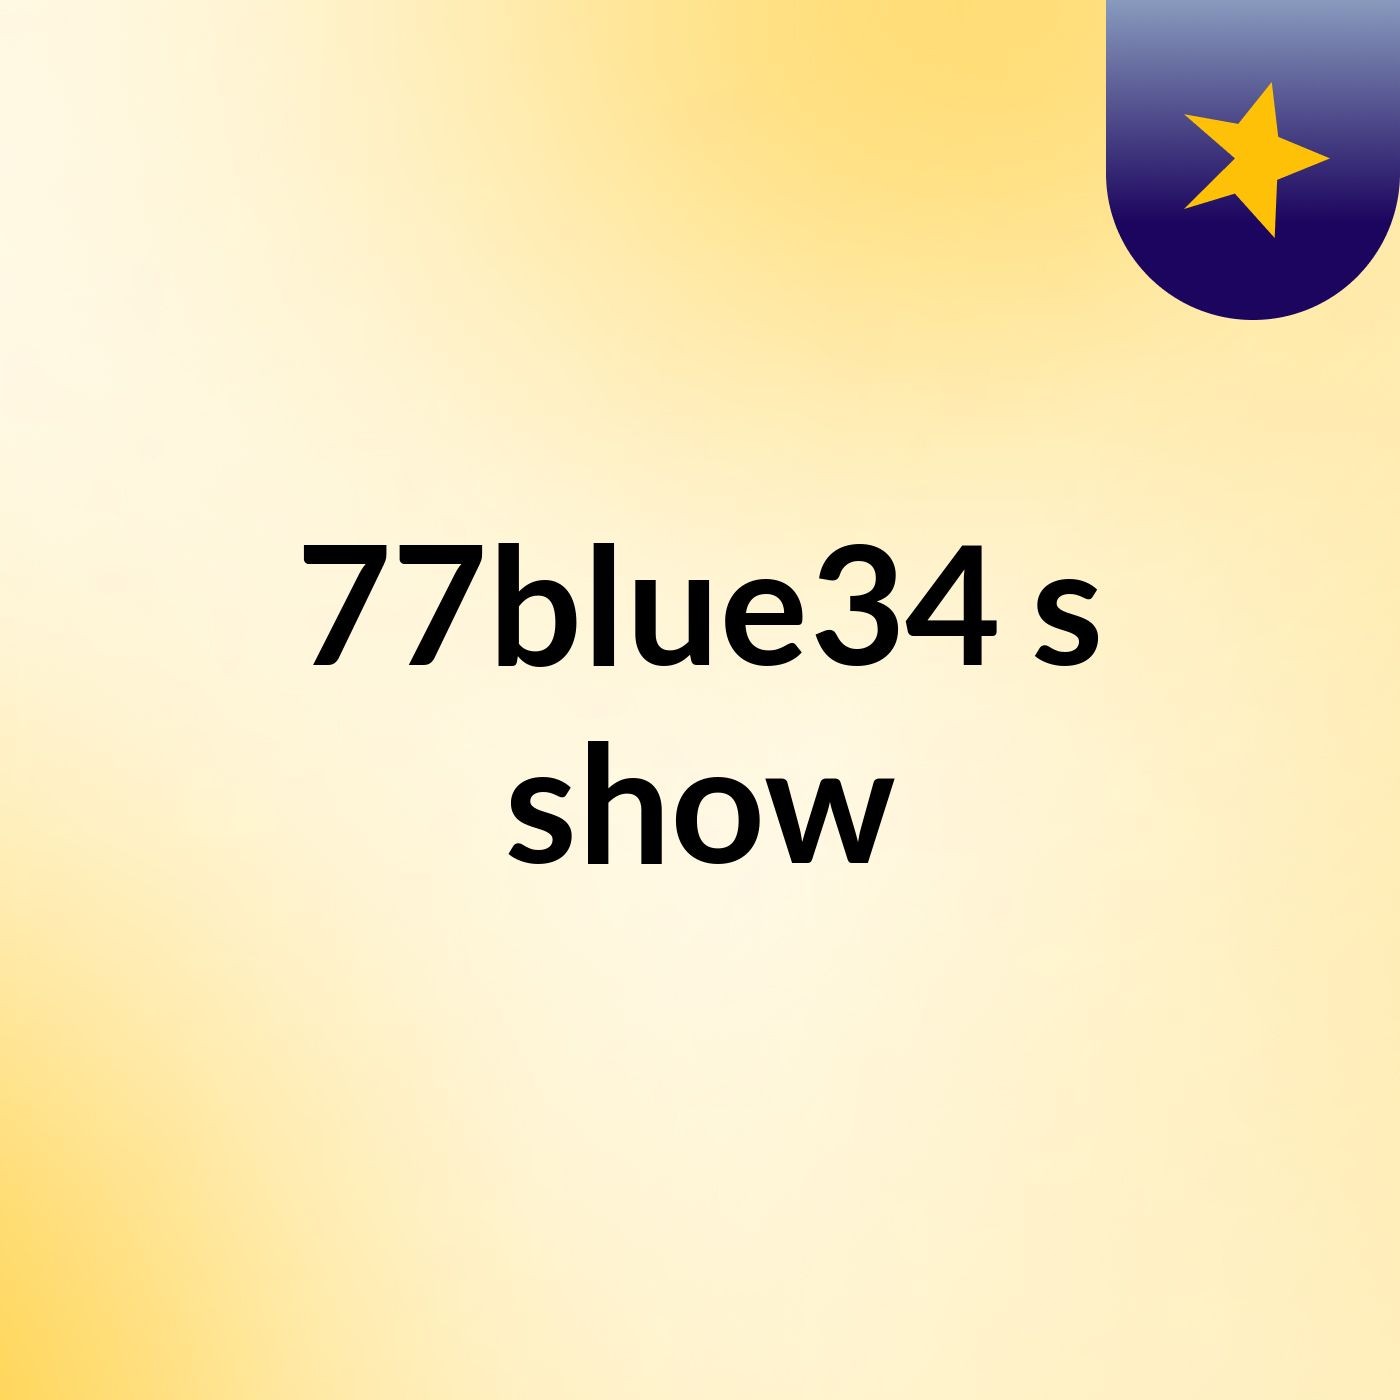 77blue34's show